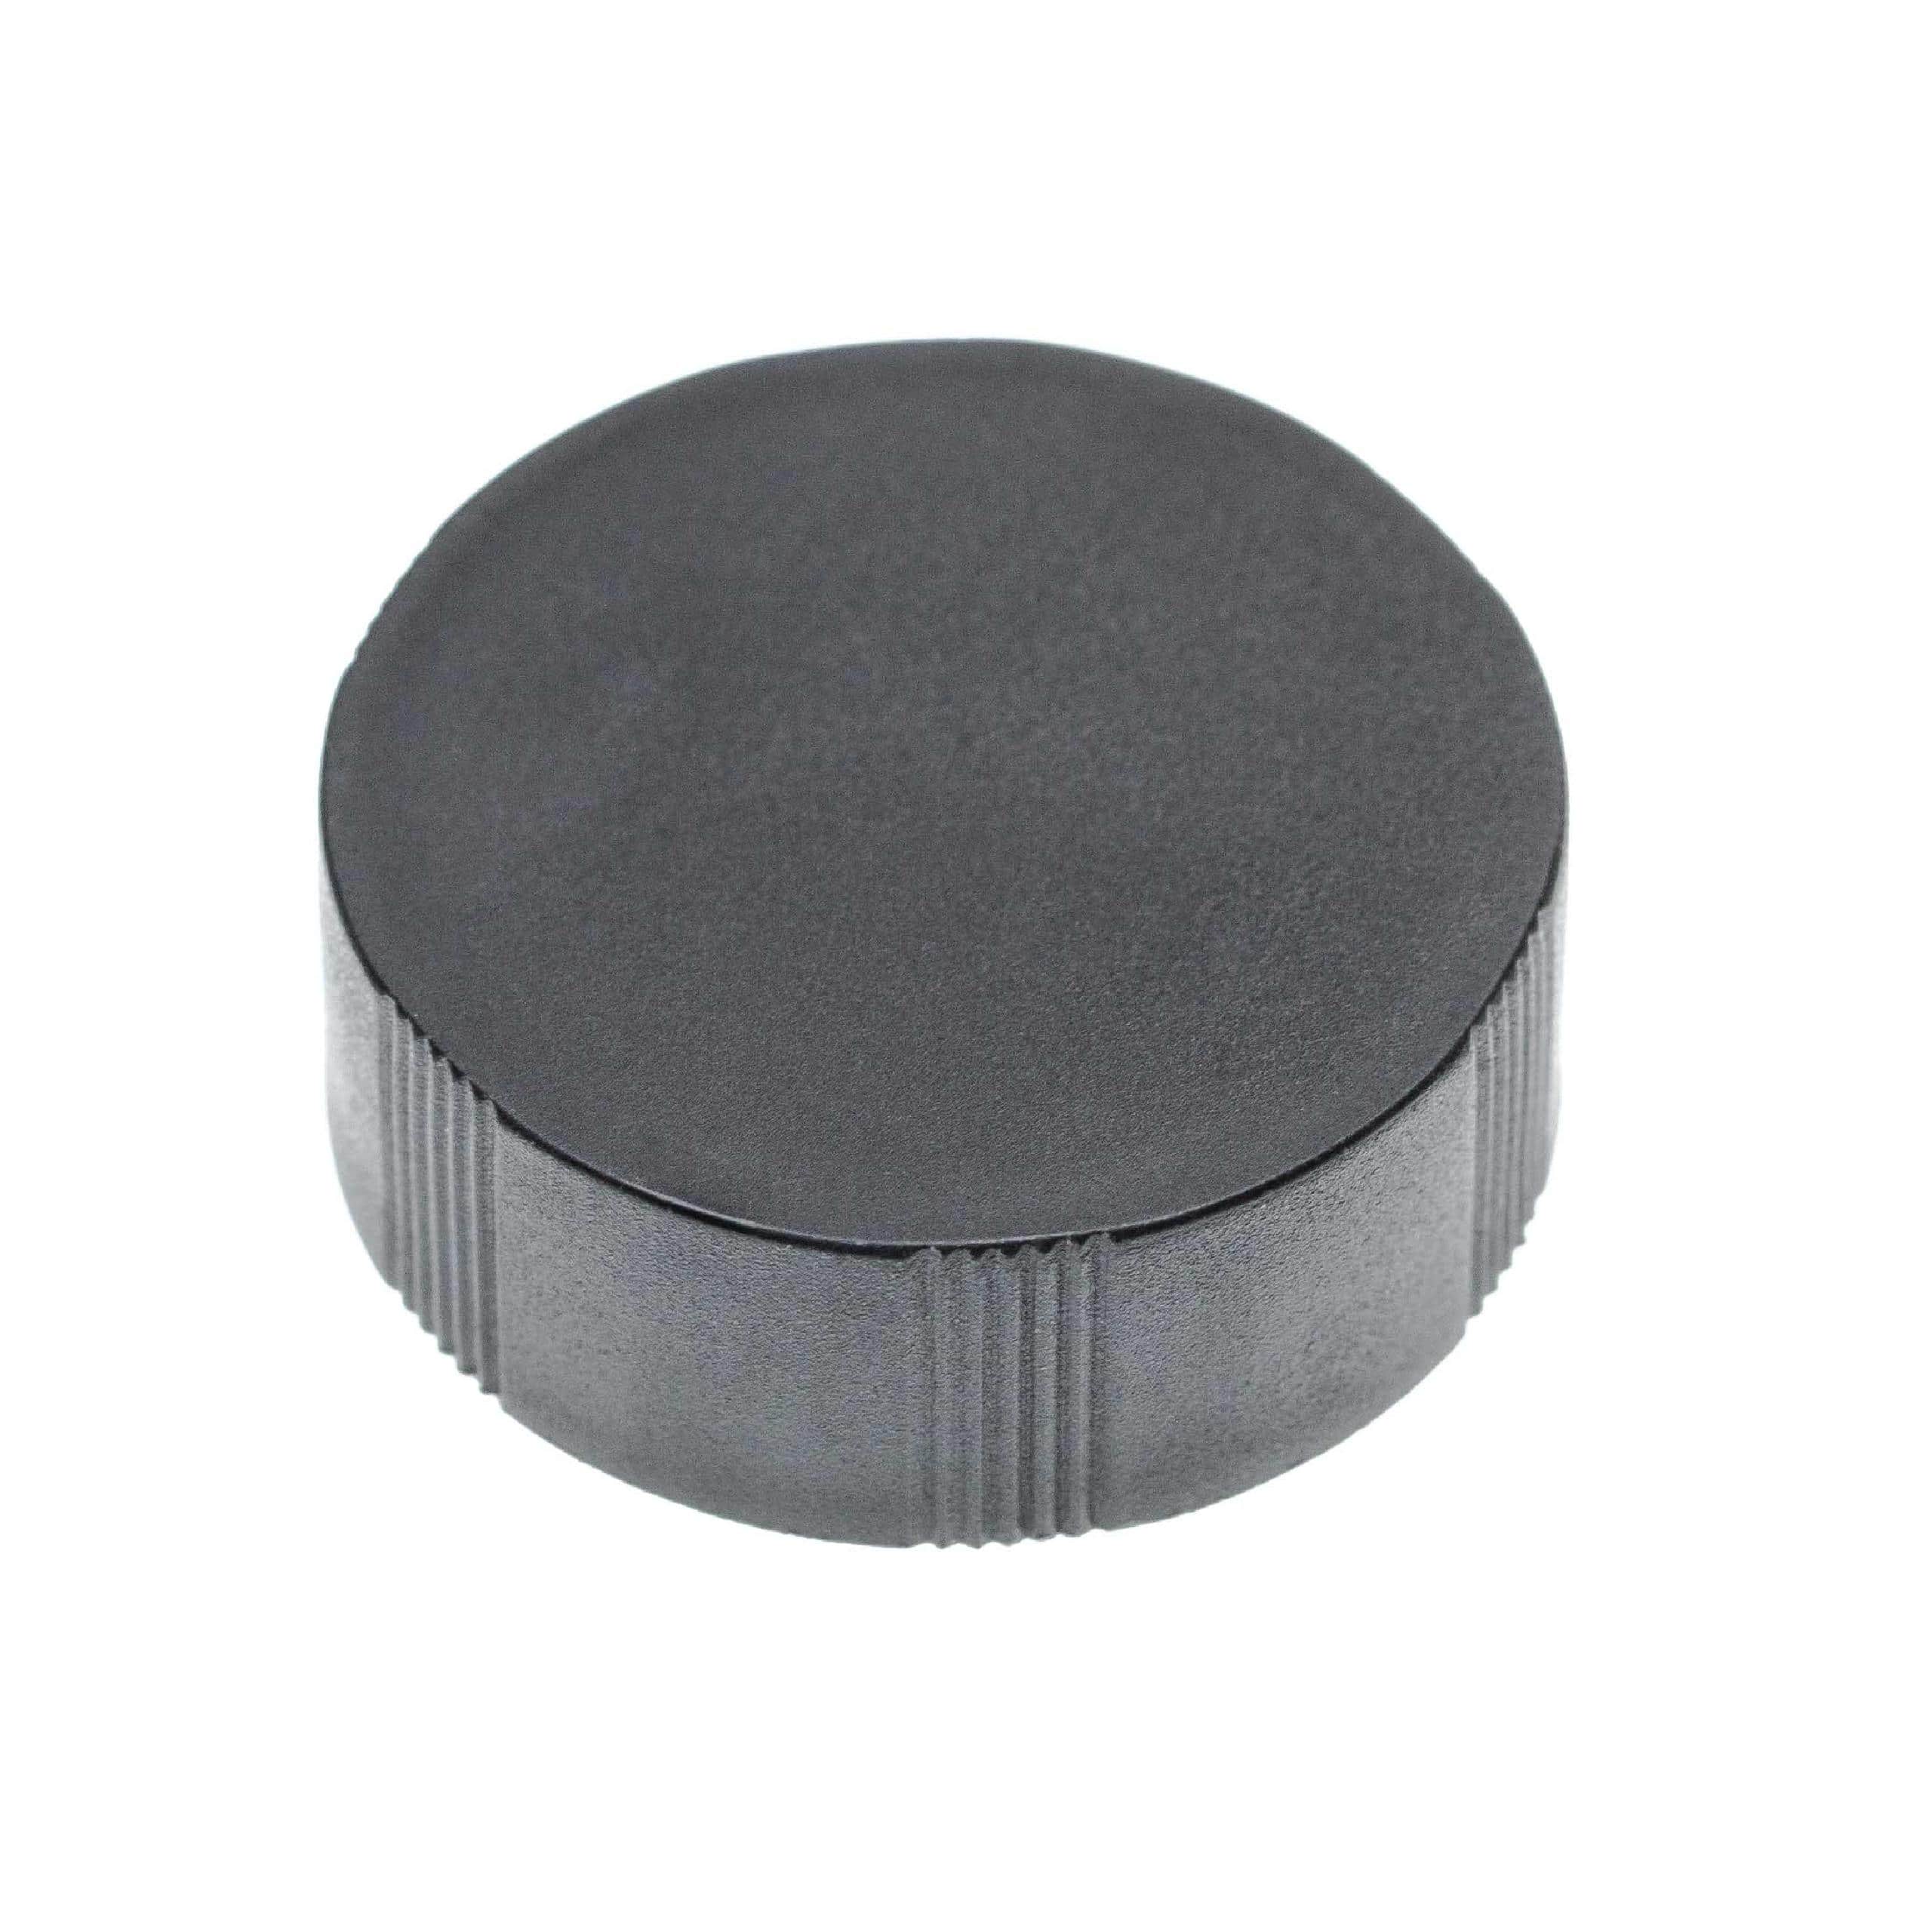 Objektivdeckel passend für Fernglas-Objektive mit 30 mm Durchmesser - Schwarz, Aufsteckbar